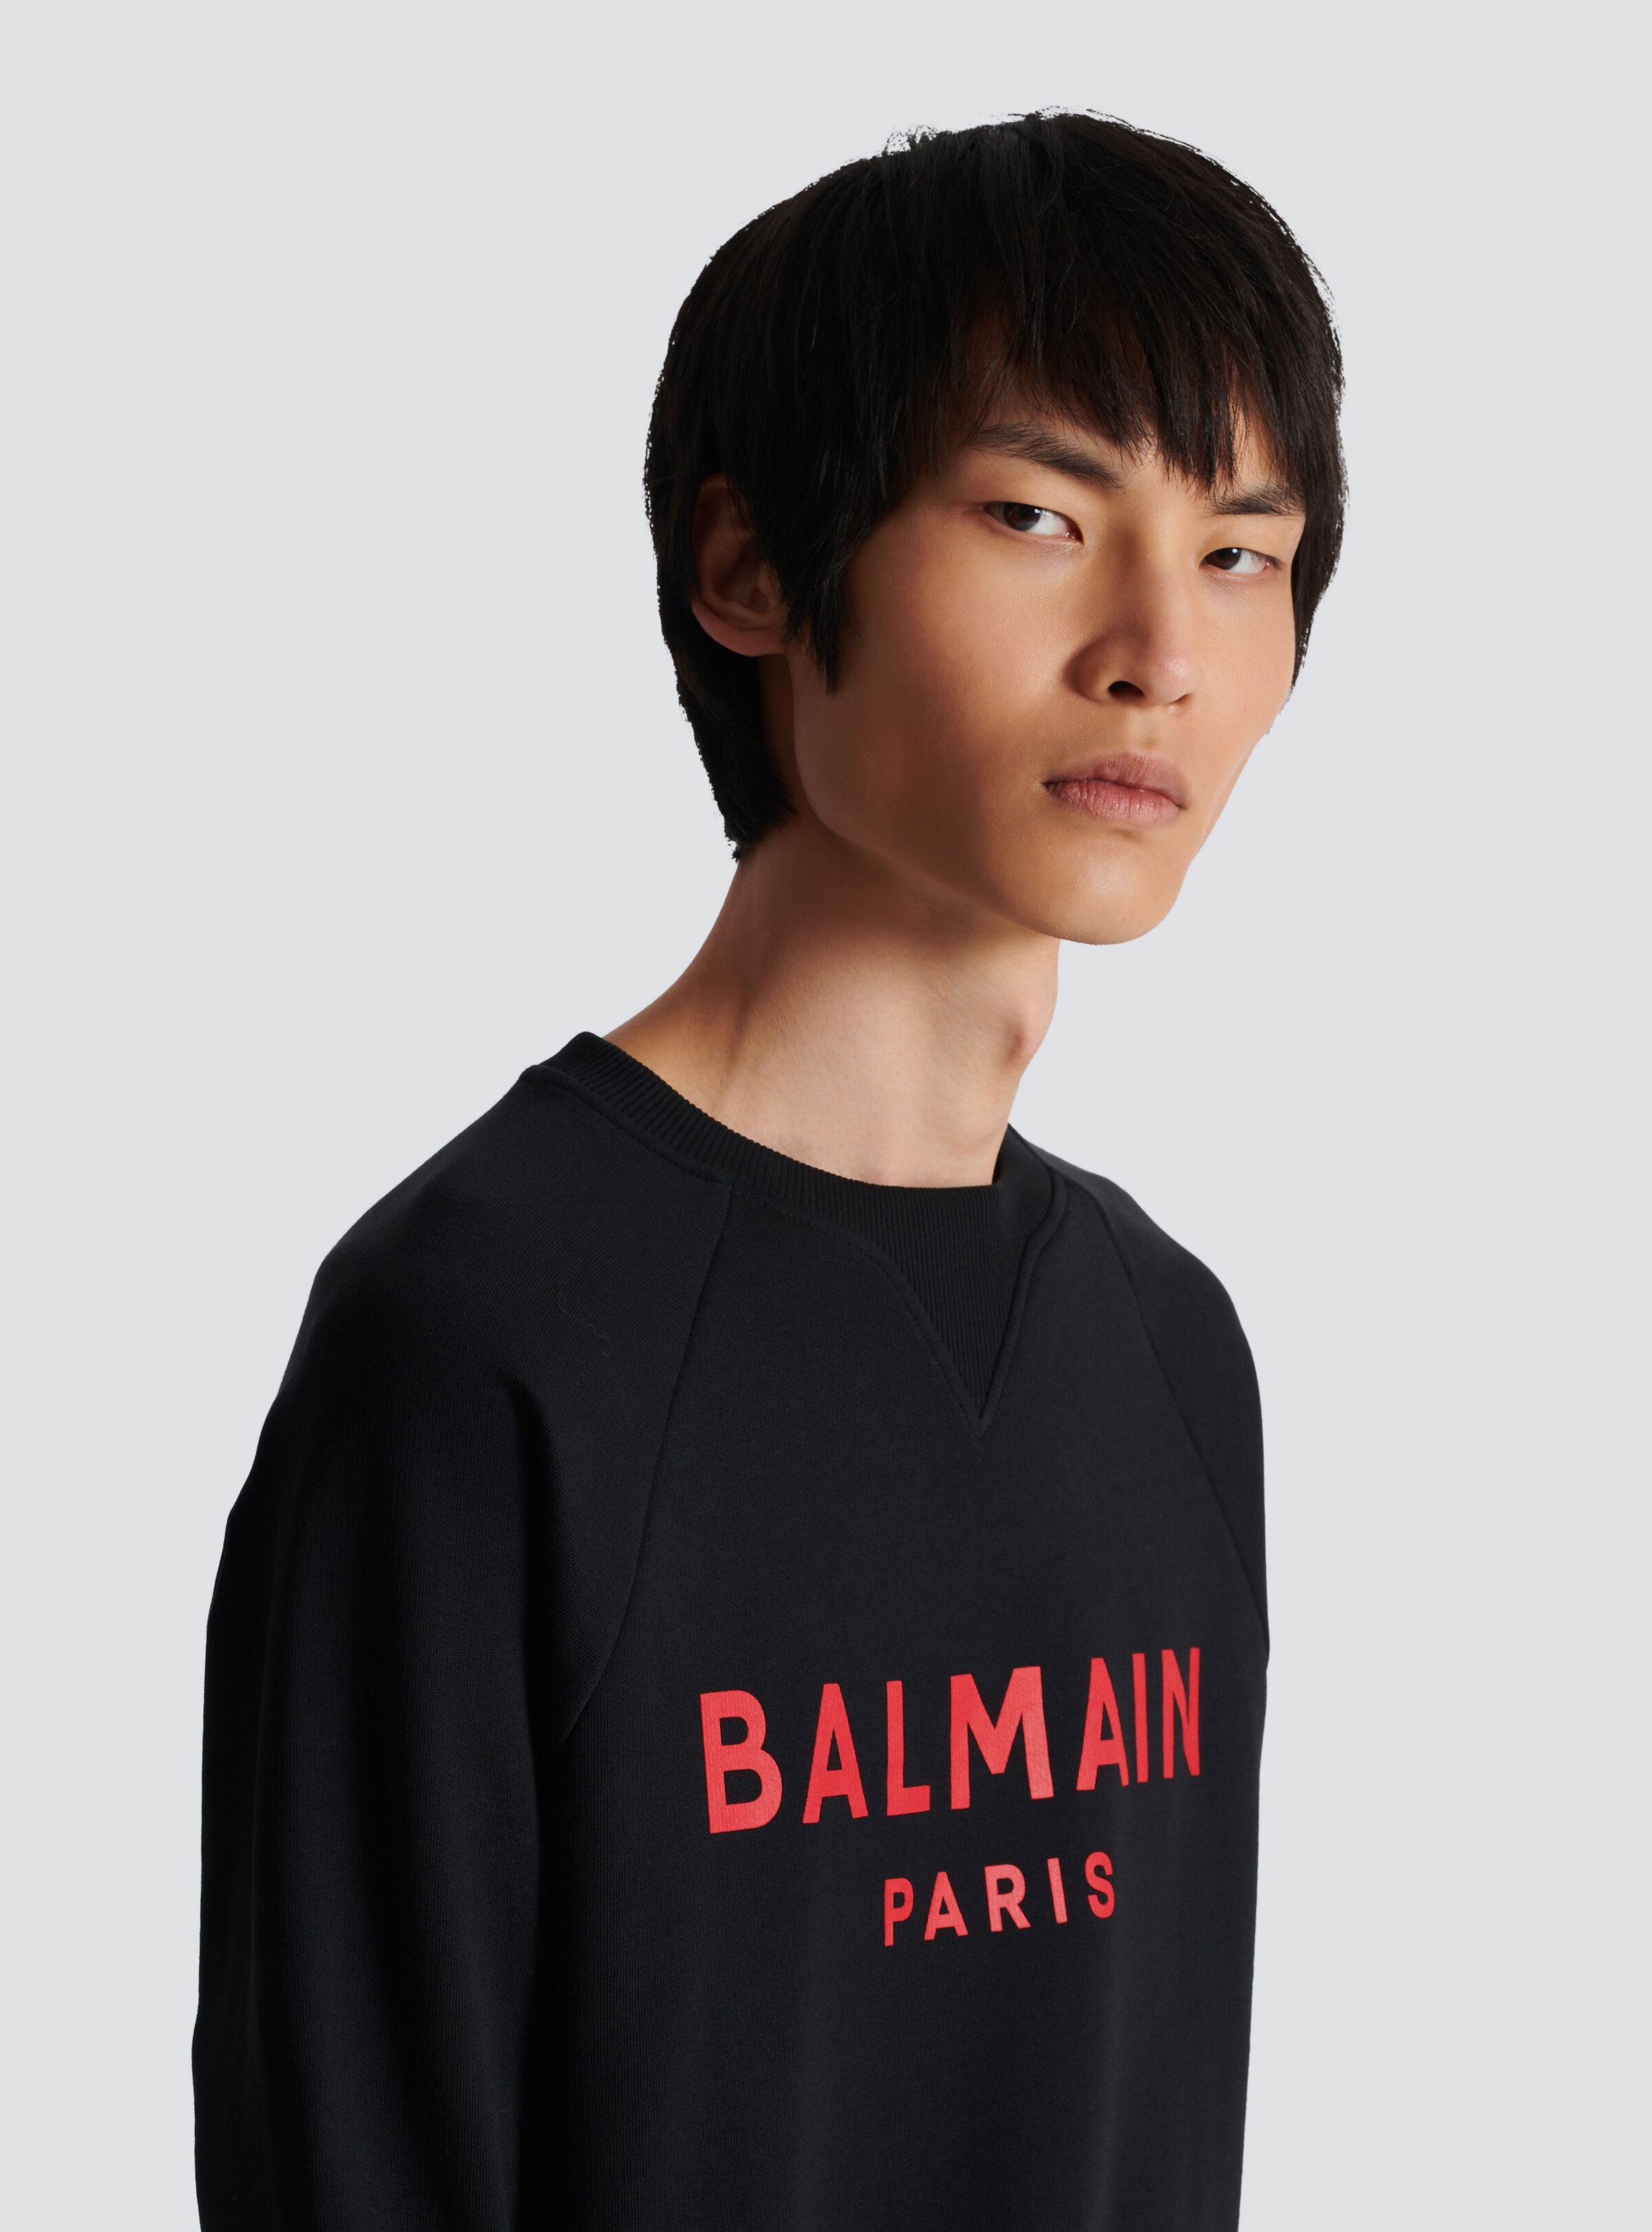 Balmain Paris printed sweatshirt - 7